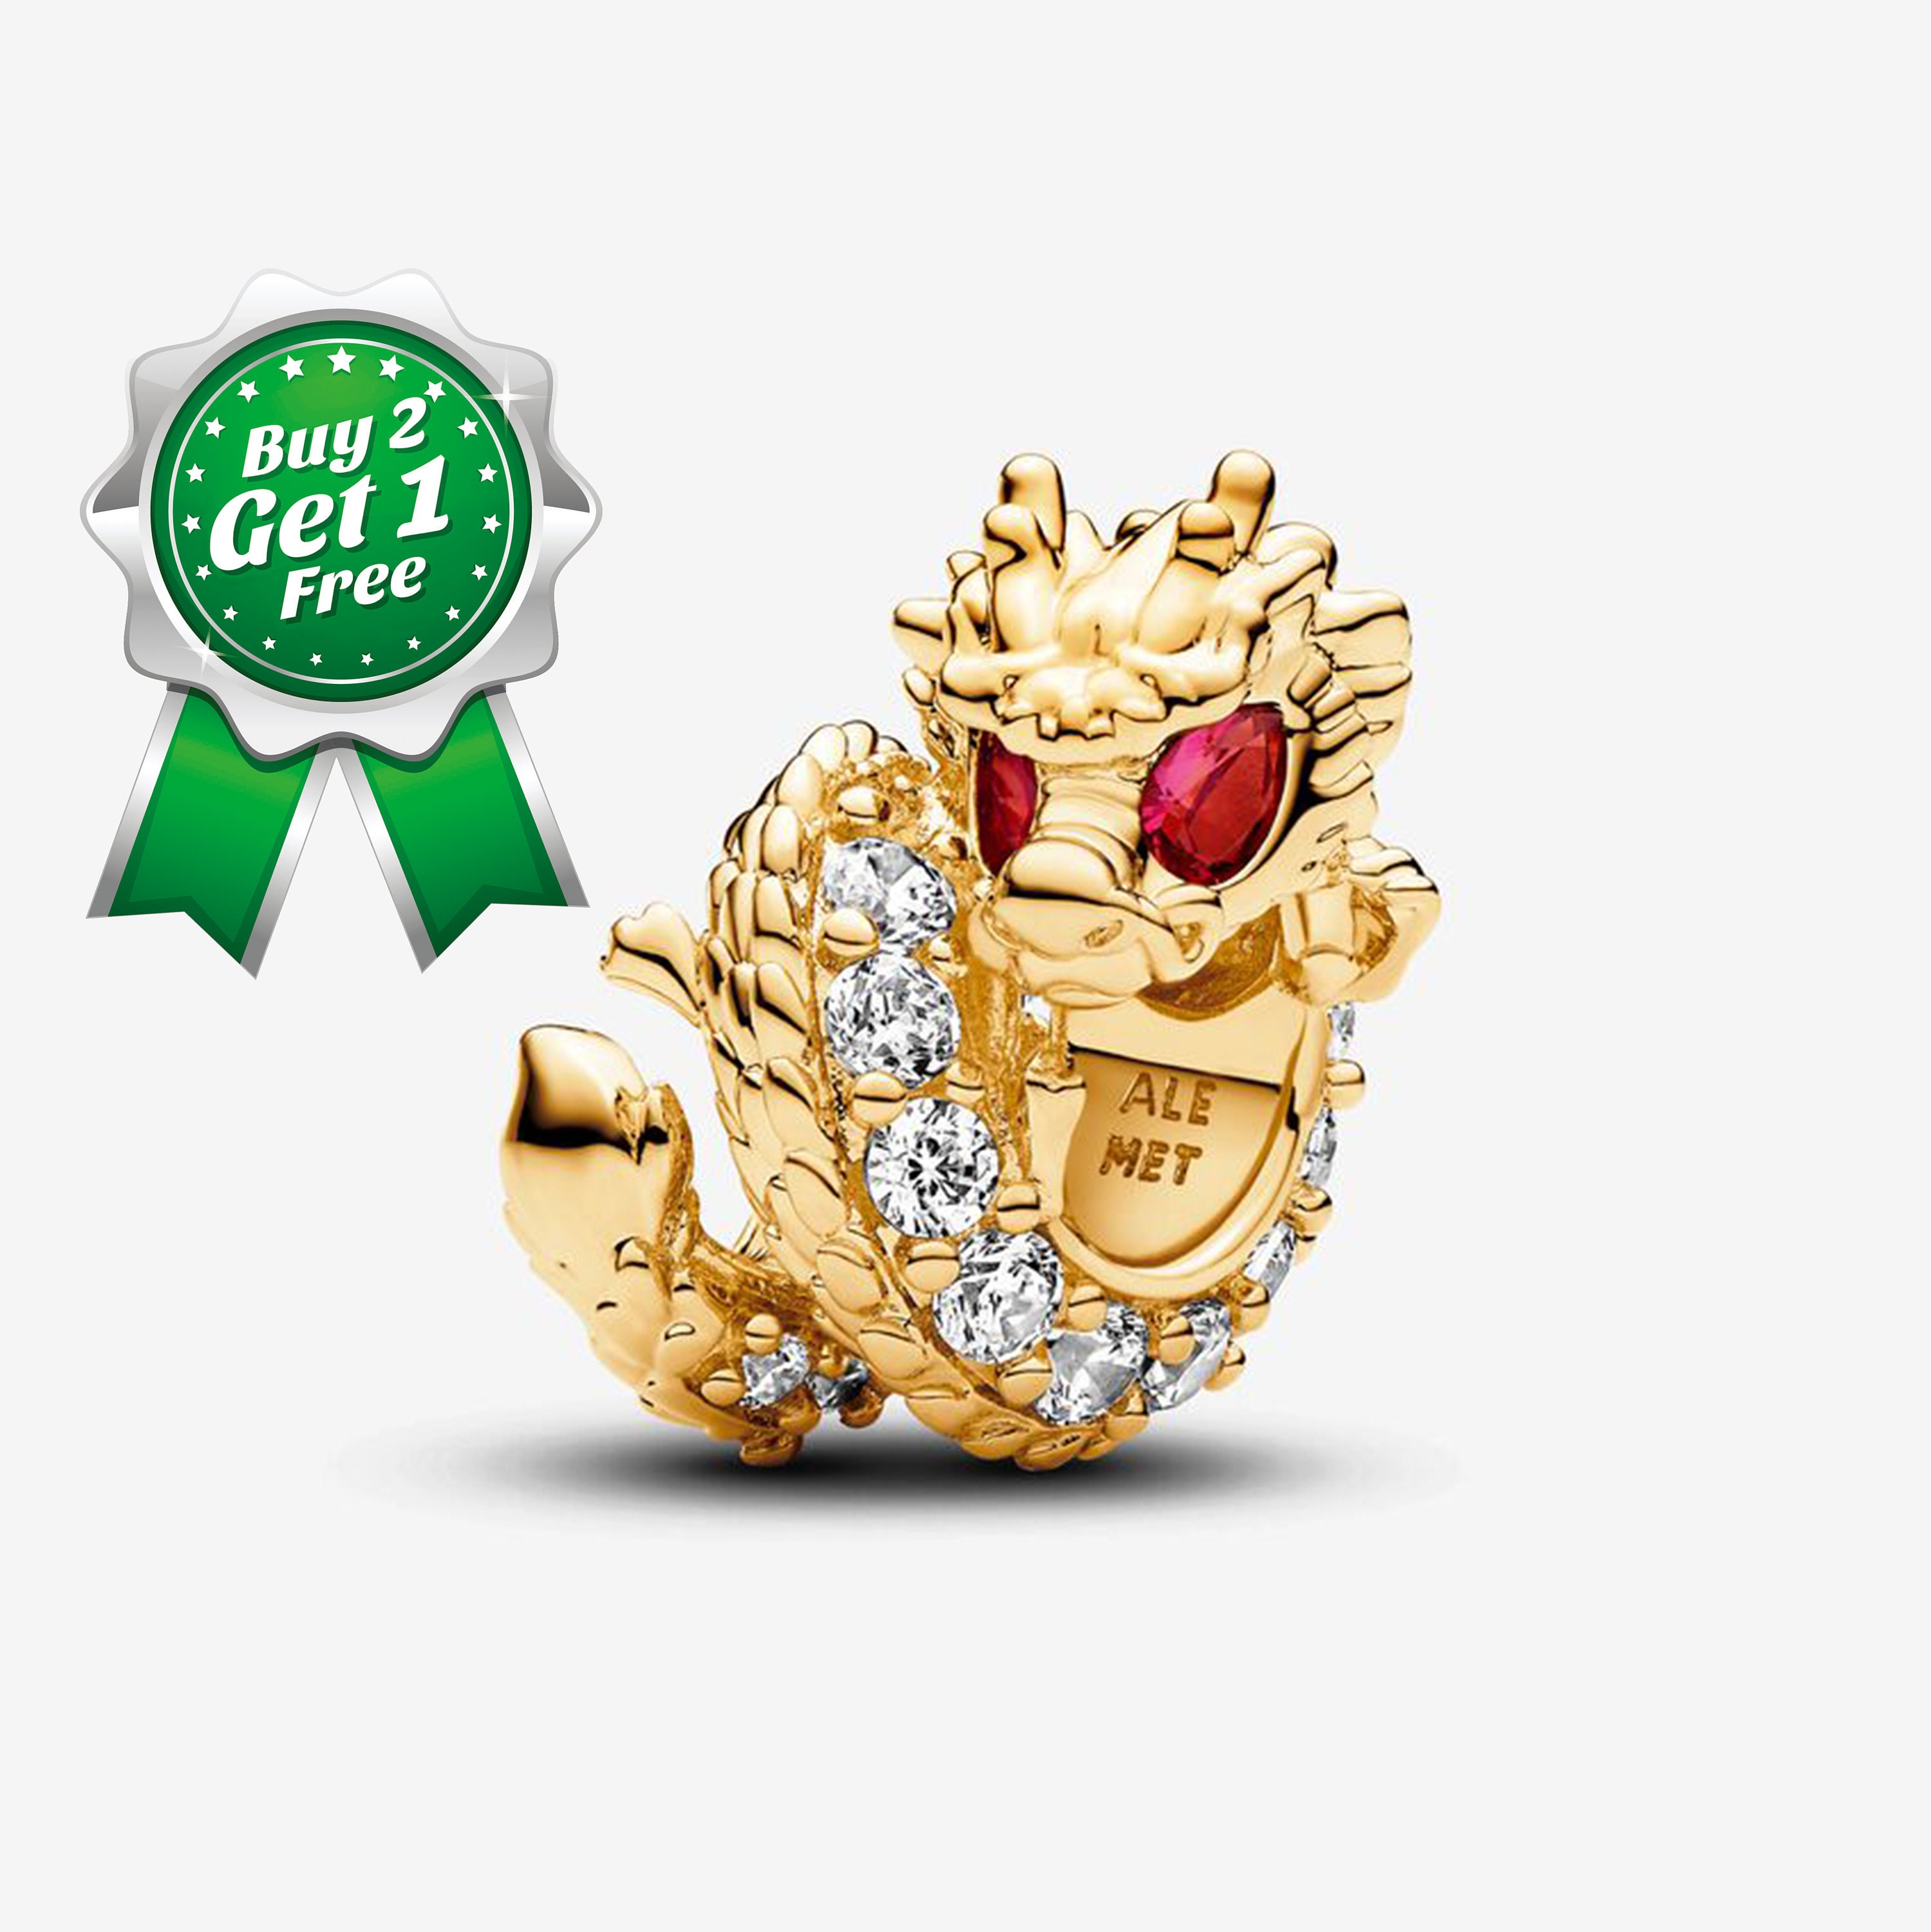 WYSIWYG 4pcs 45x38mm Dragon Charms For Jewelry Making Jewelry